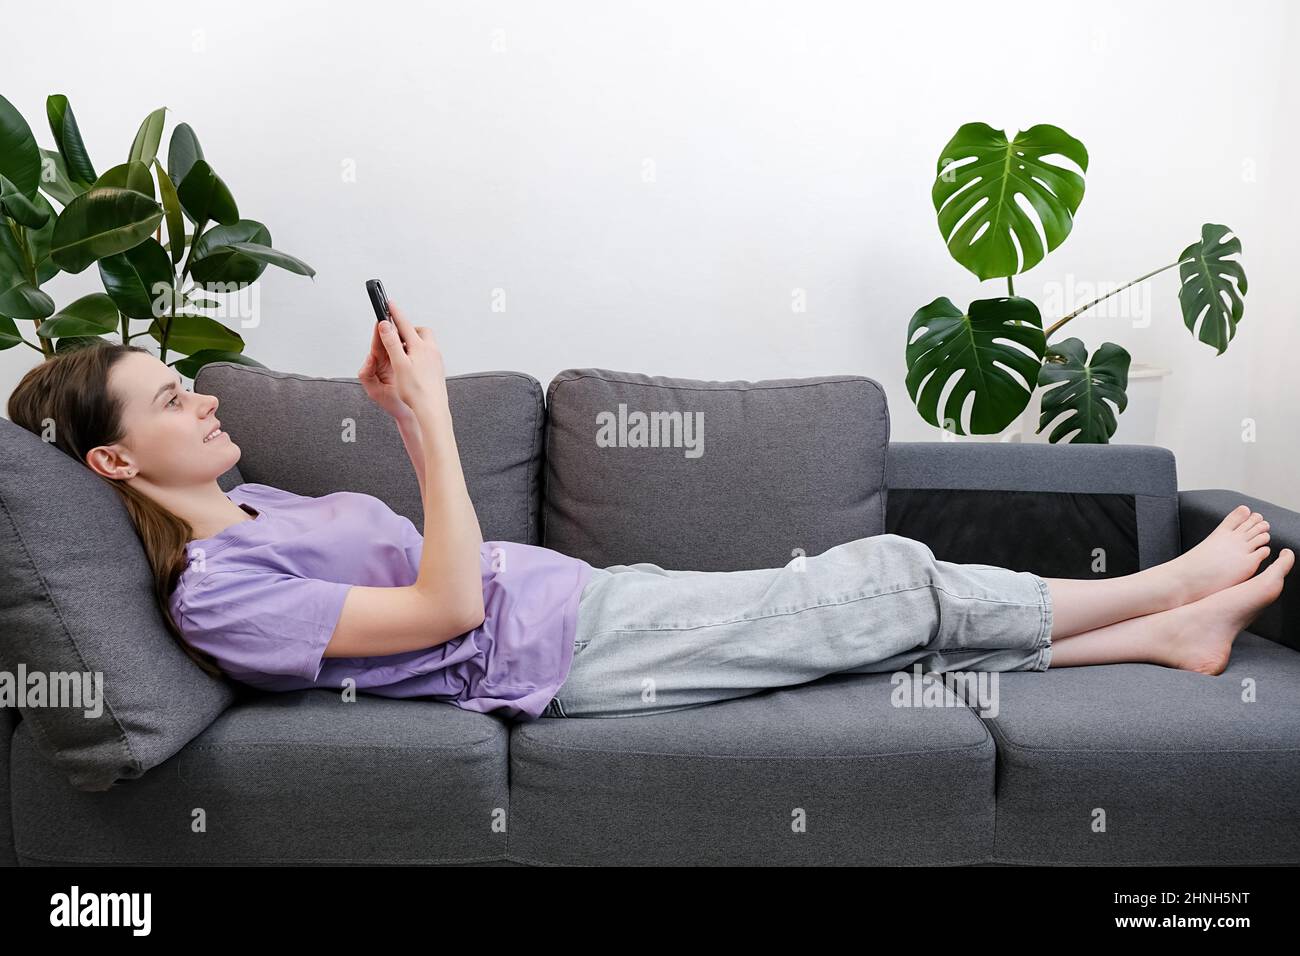 Seitenansicht einer ruhigen jungen Frau, die auf dem Sofa im Wohnzimmer liegt und ihr Smartphone in der Hand hält, schönes Mädchen, das sich chattet, soziale Netzwerke nutzt, Waren auswählt Stockfoto